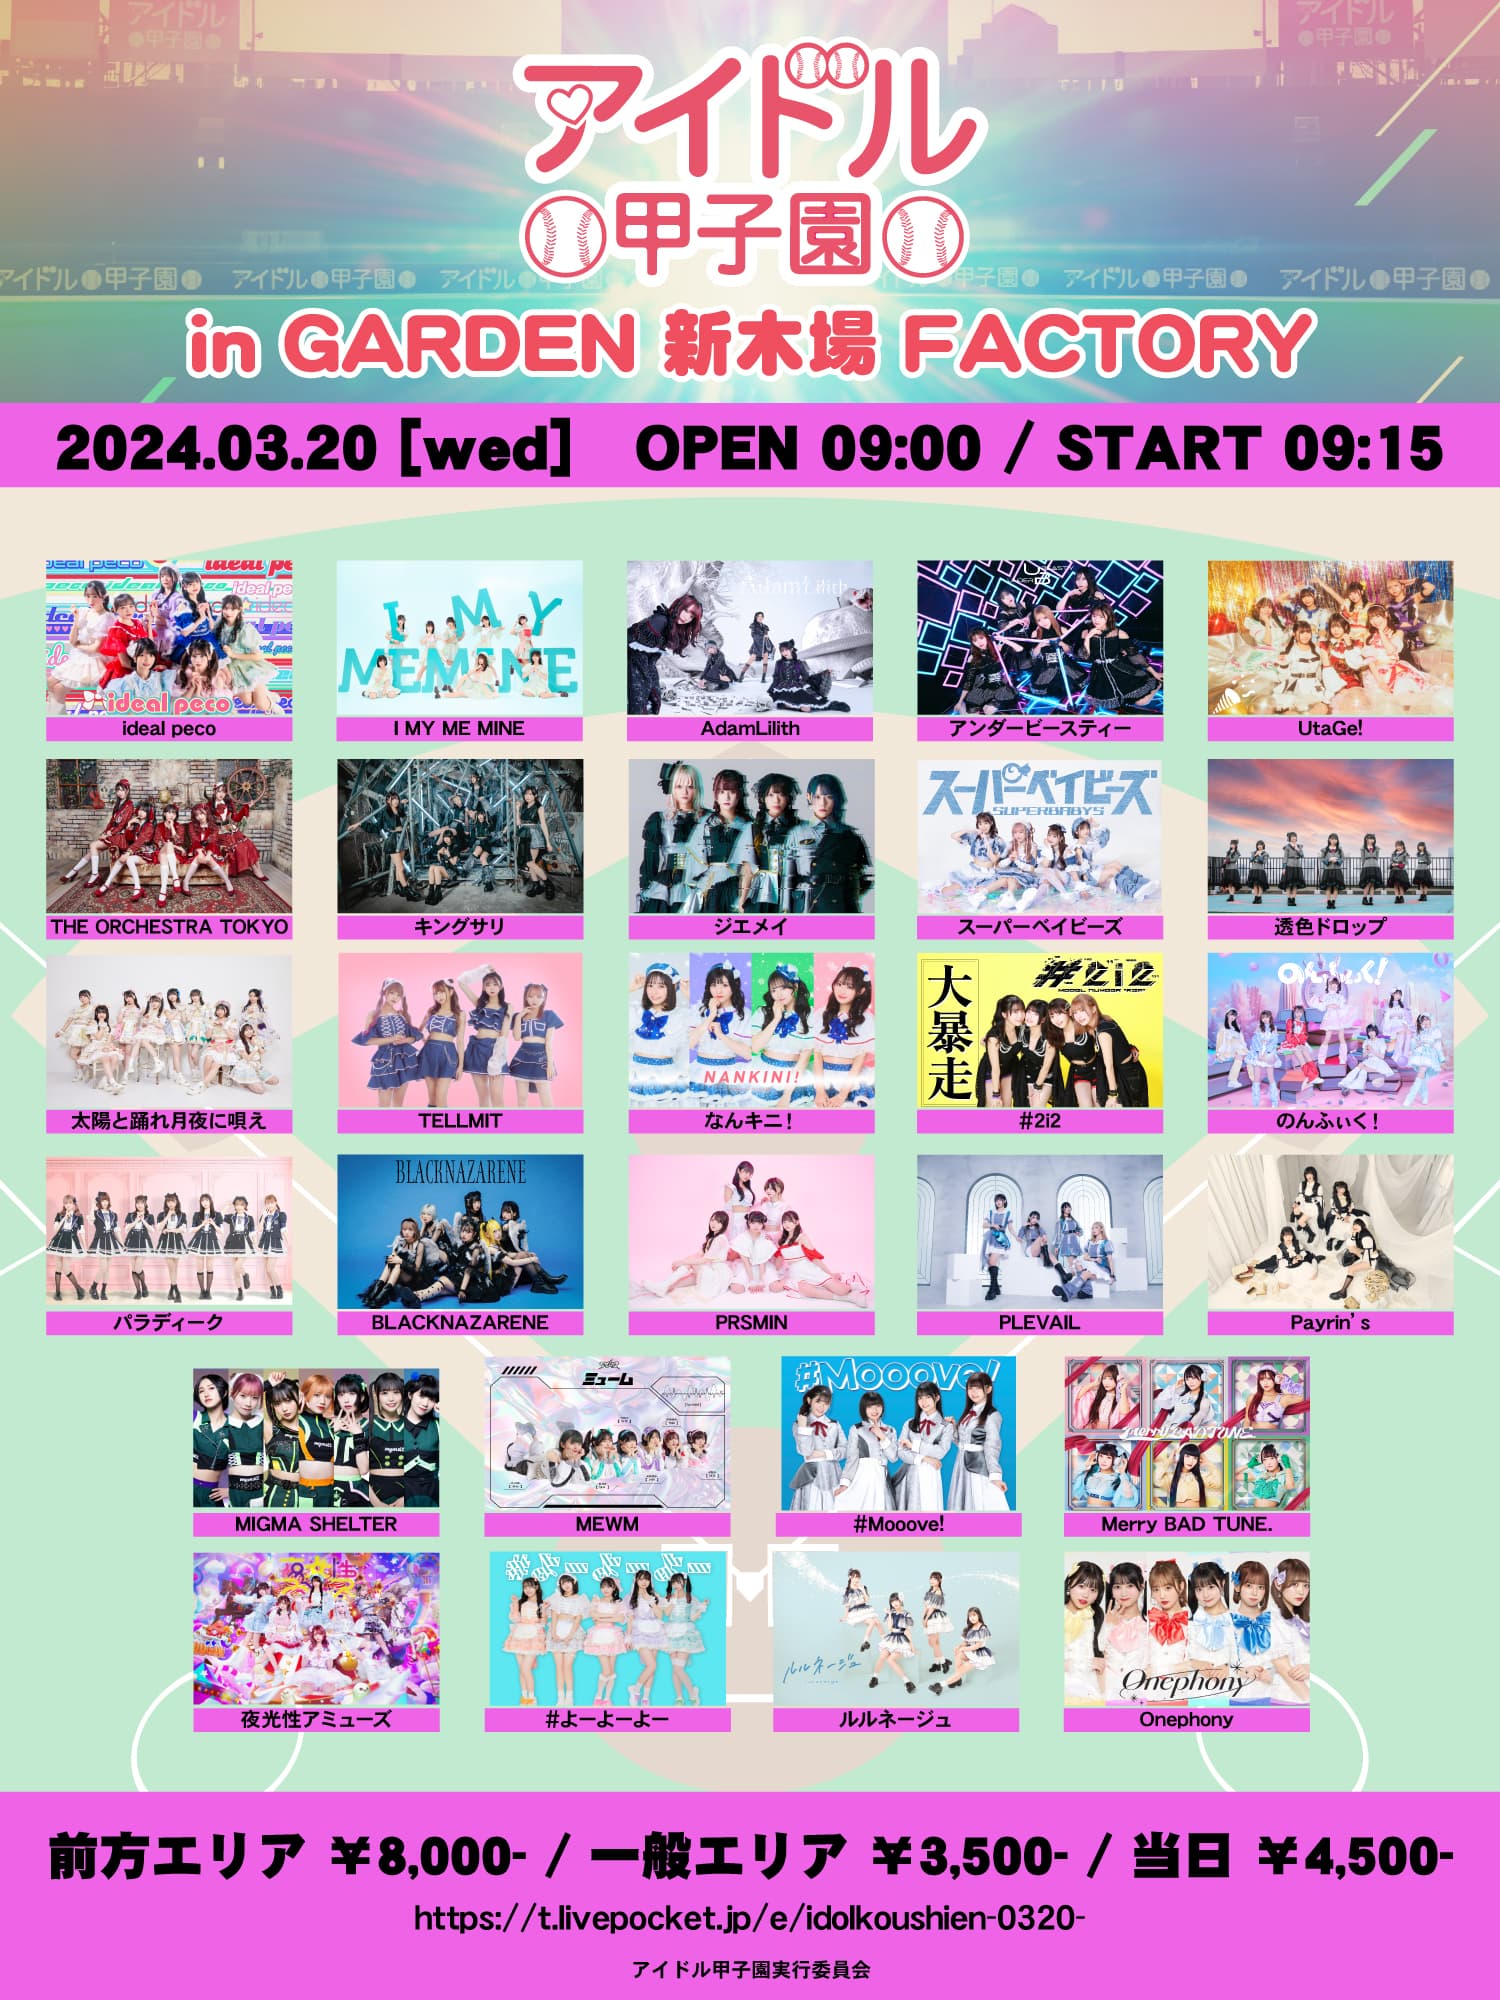 アイドル甲子園 in GARDEN 新木場 FACTORY | #Mooove!公式サイト